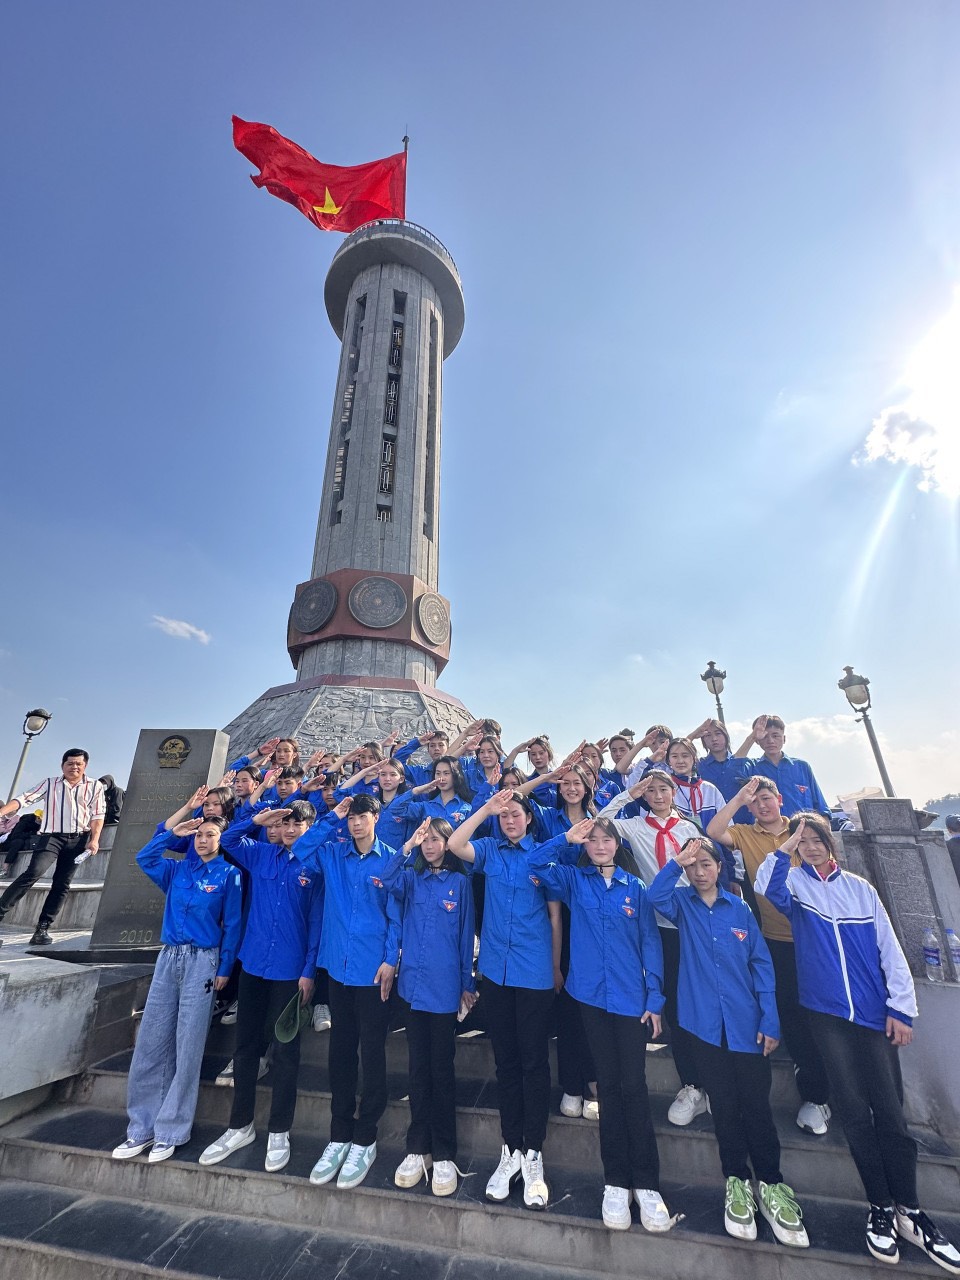 Thiêng liêng kết nạp đoàn tại cột cờ quốc gia Lũng Cú: Bồi đắp tình yêu quê hương, đất nước cho thế hệ trẻ   